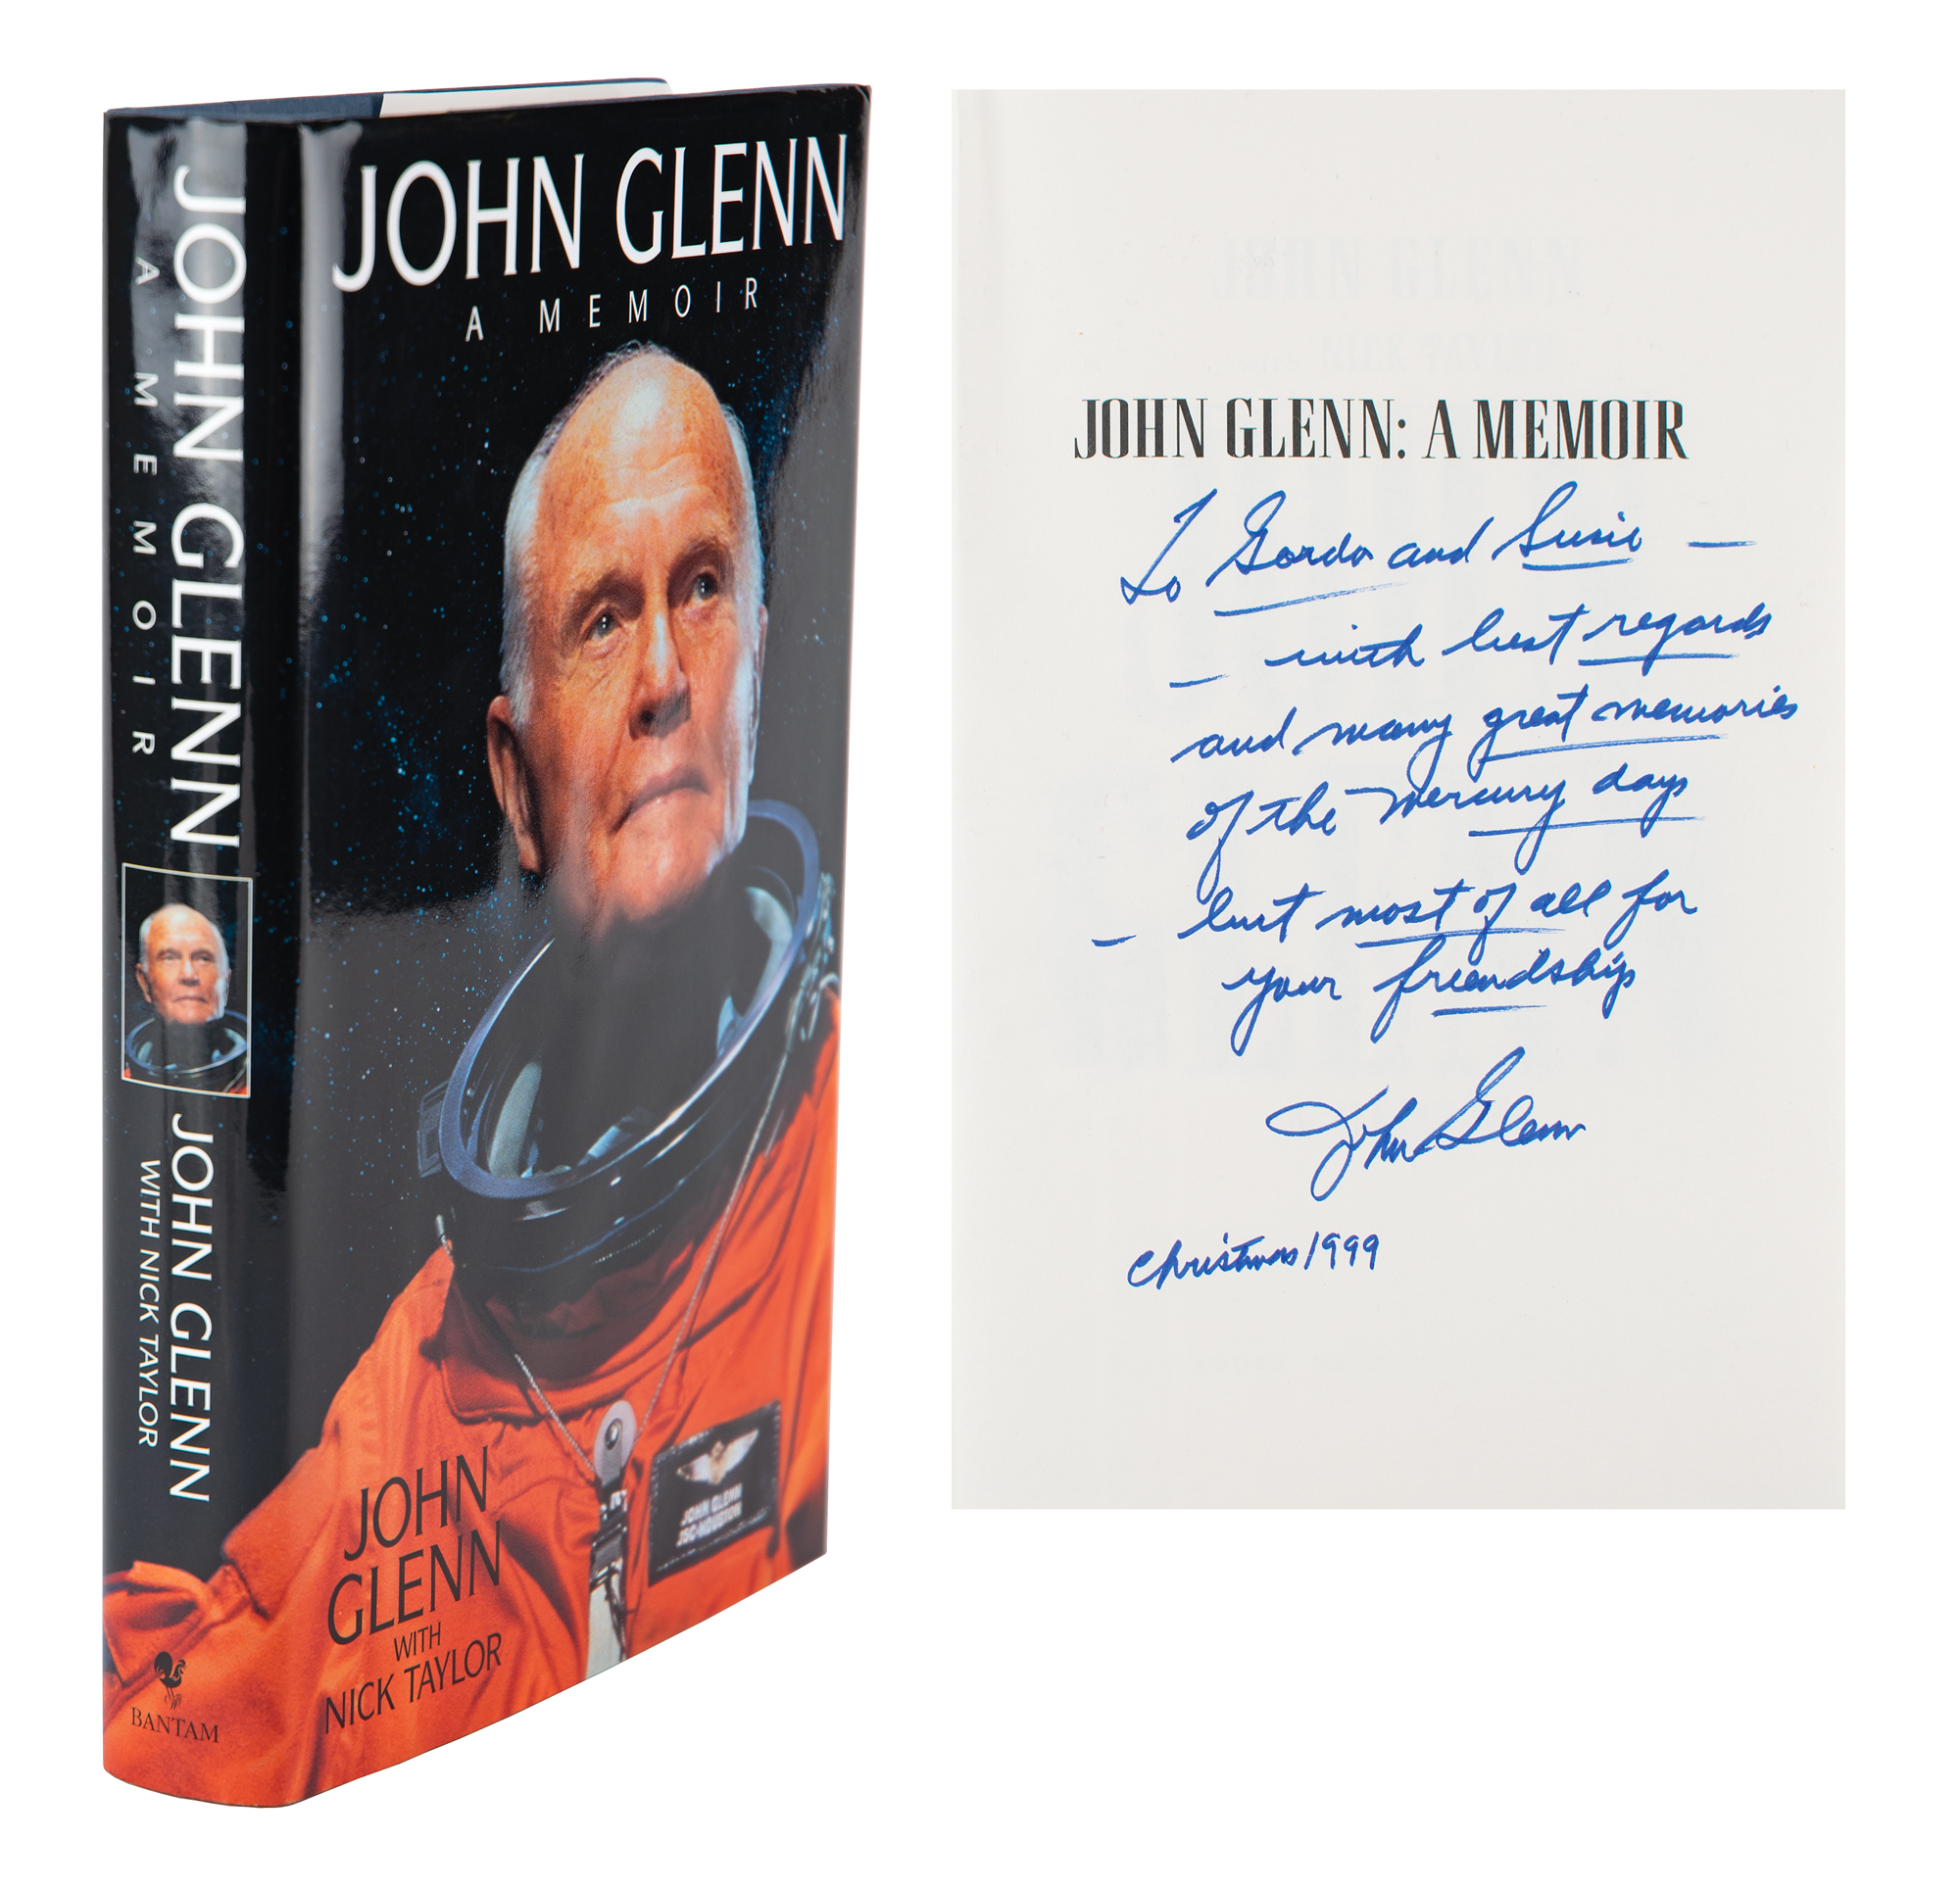 Lot #3004 John Glenn Signed Book Inscribed to Gordon Cooper